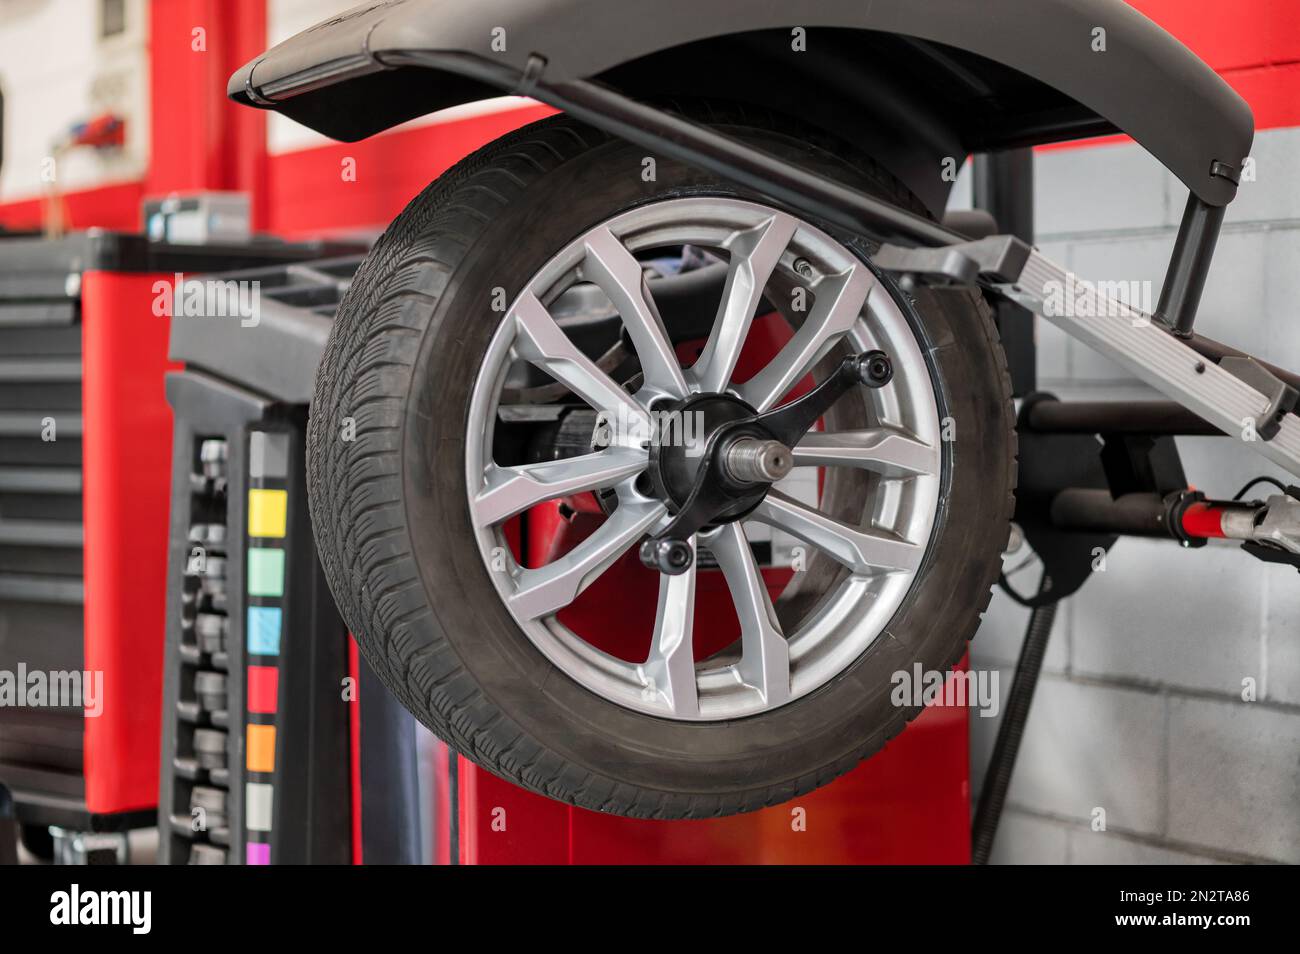 Rueda que cuelga en el equilibrador de la rueda durante el servicio del coche dentro de la tienda moderna del distribuidor del coche Foto de stock